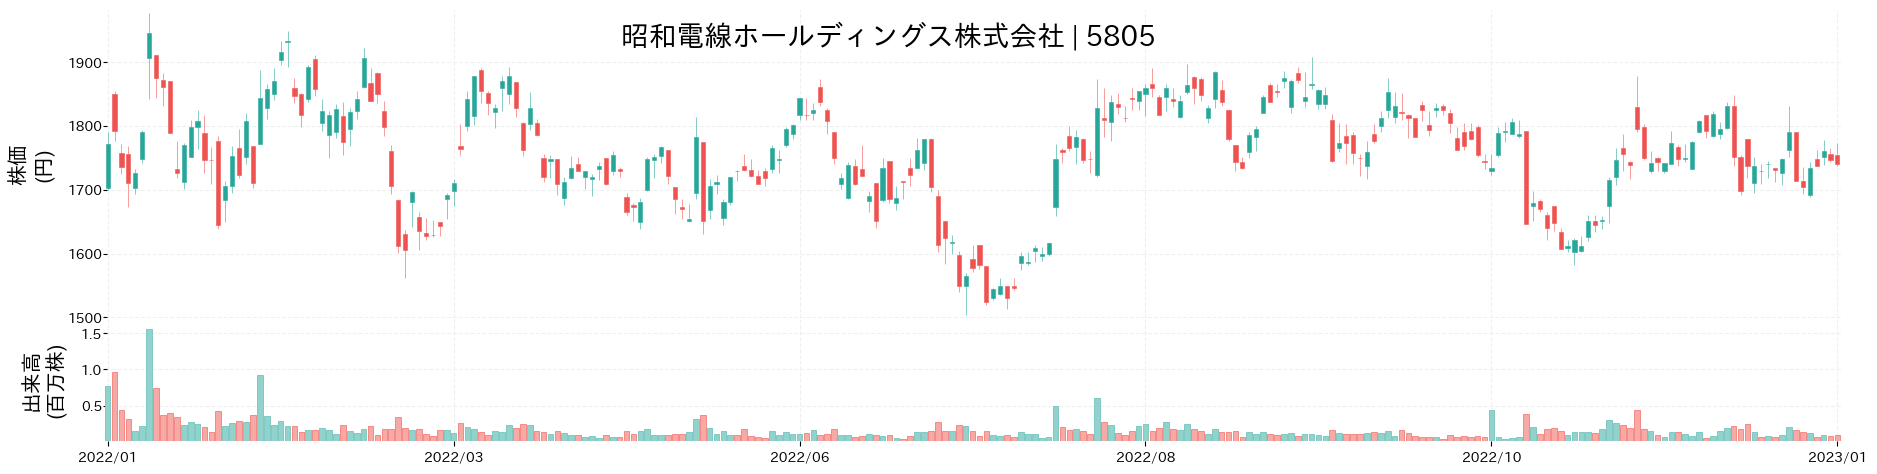 昭和電線ホールディングスの株価推移(2022)